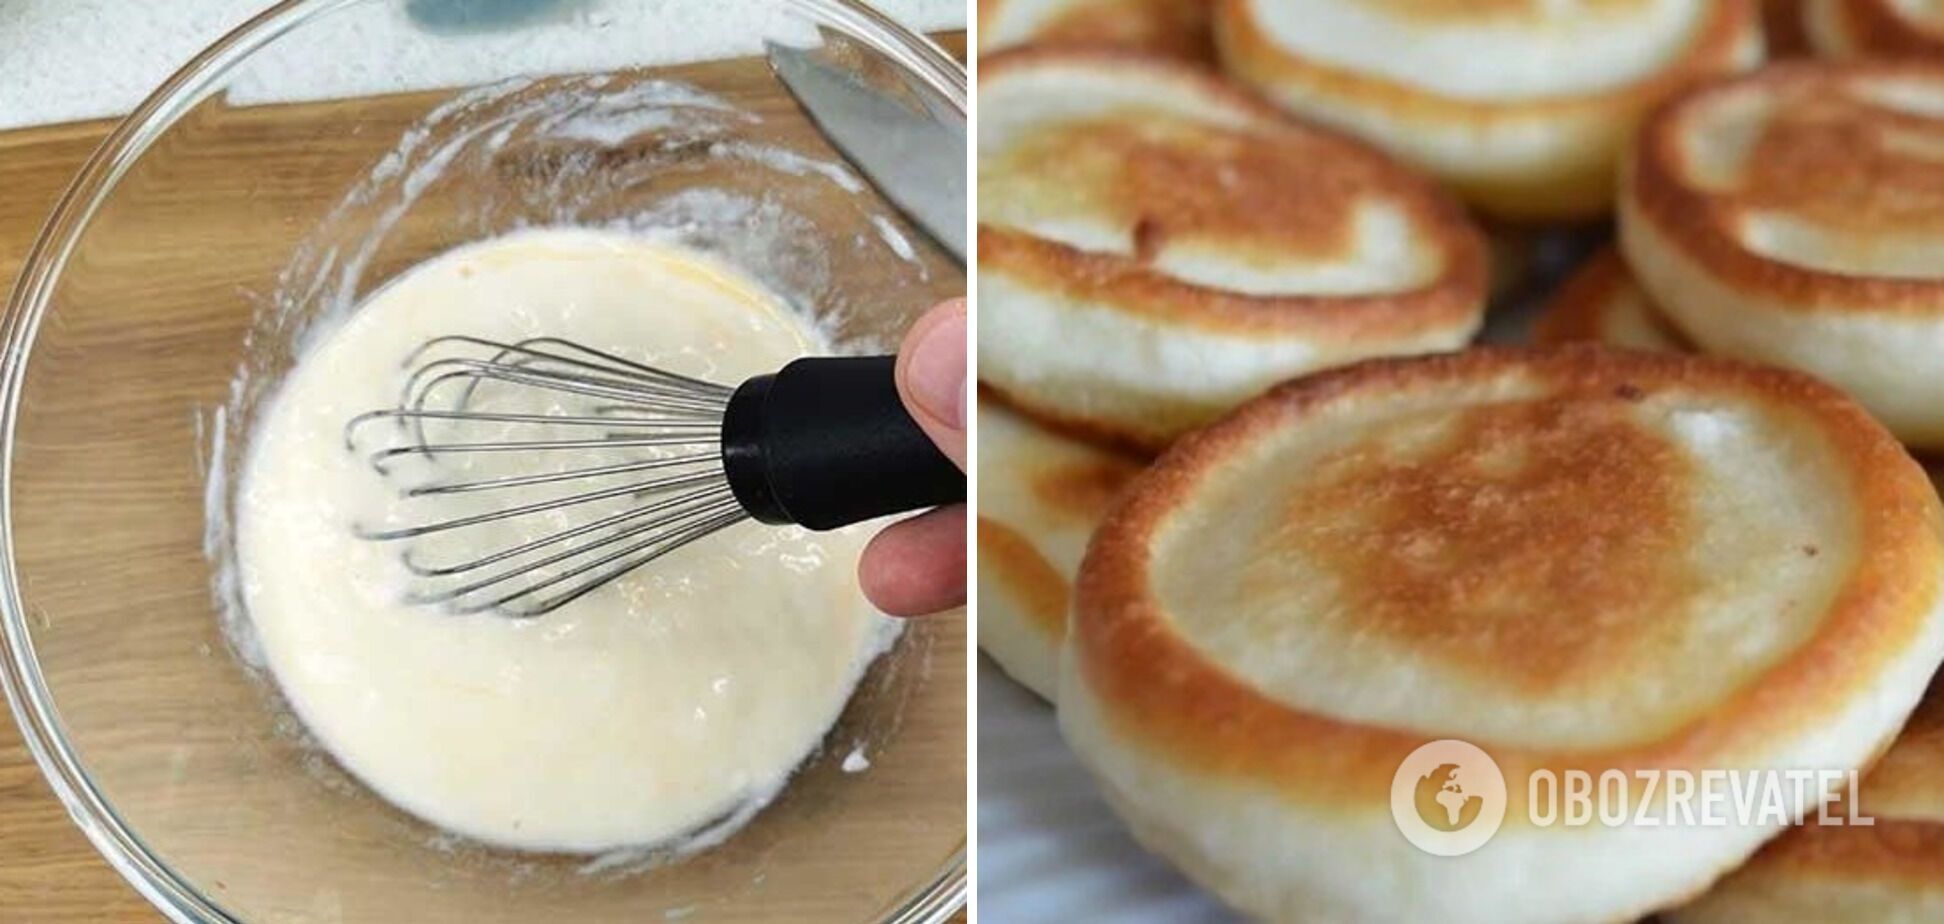 Milk-based dough for apple pancakes